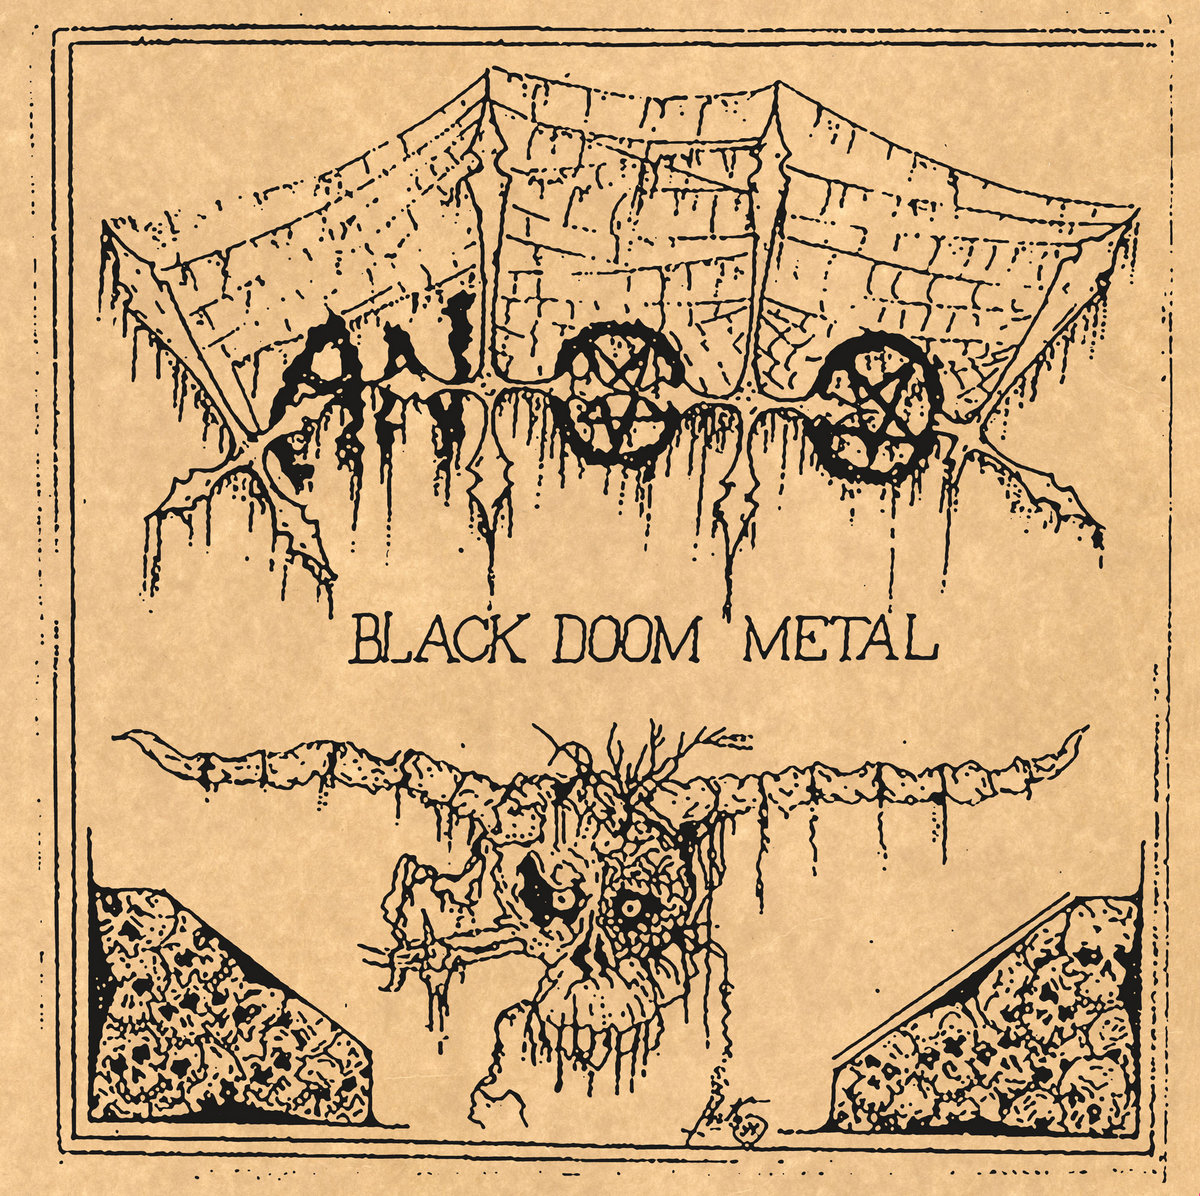 XANTOTOL - Black Doom Metal